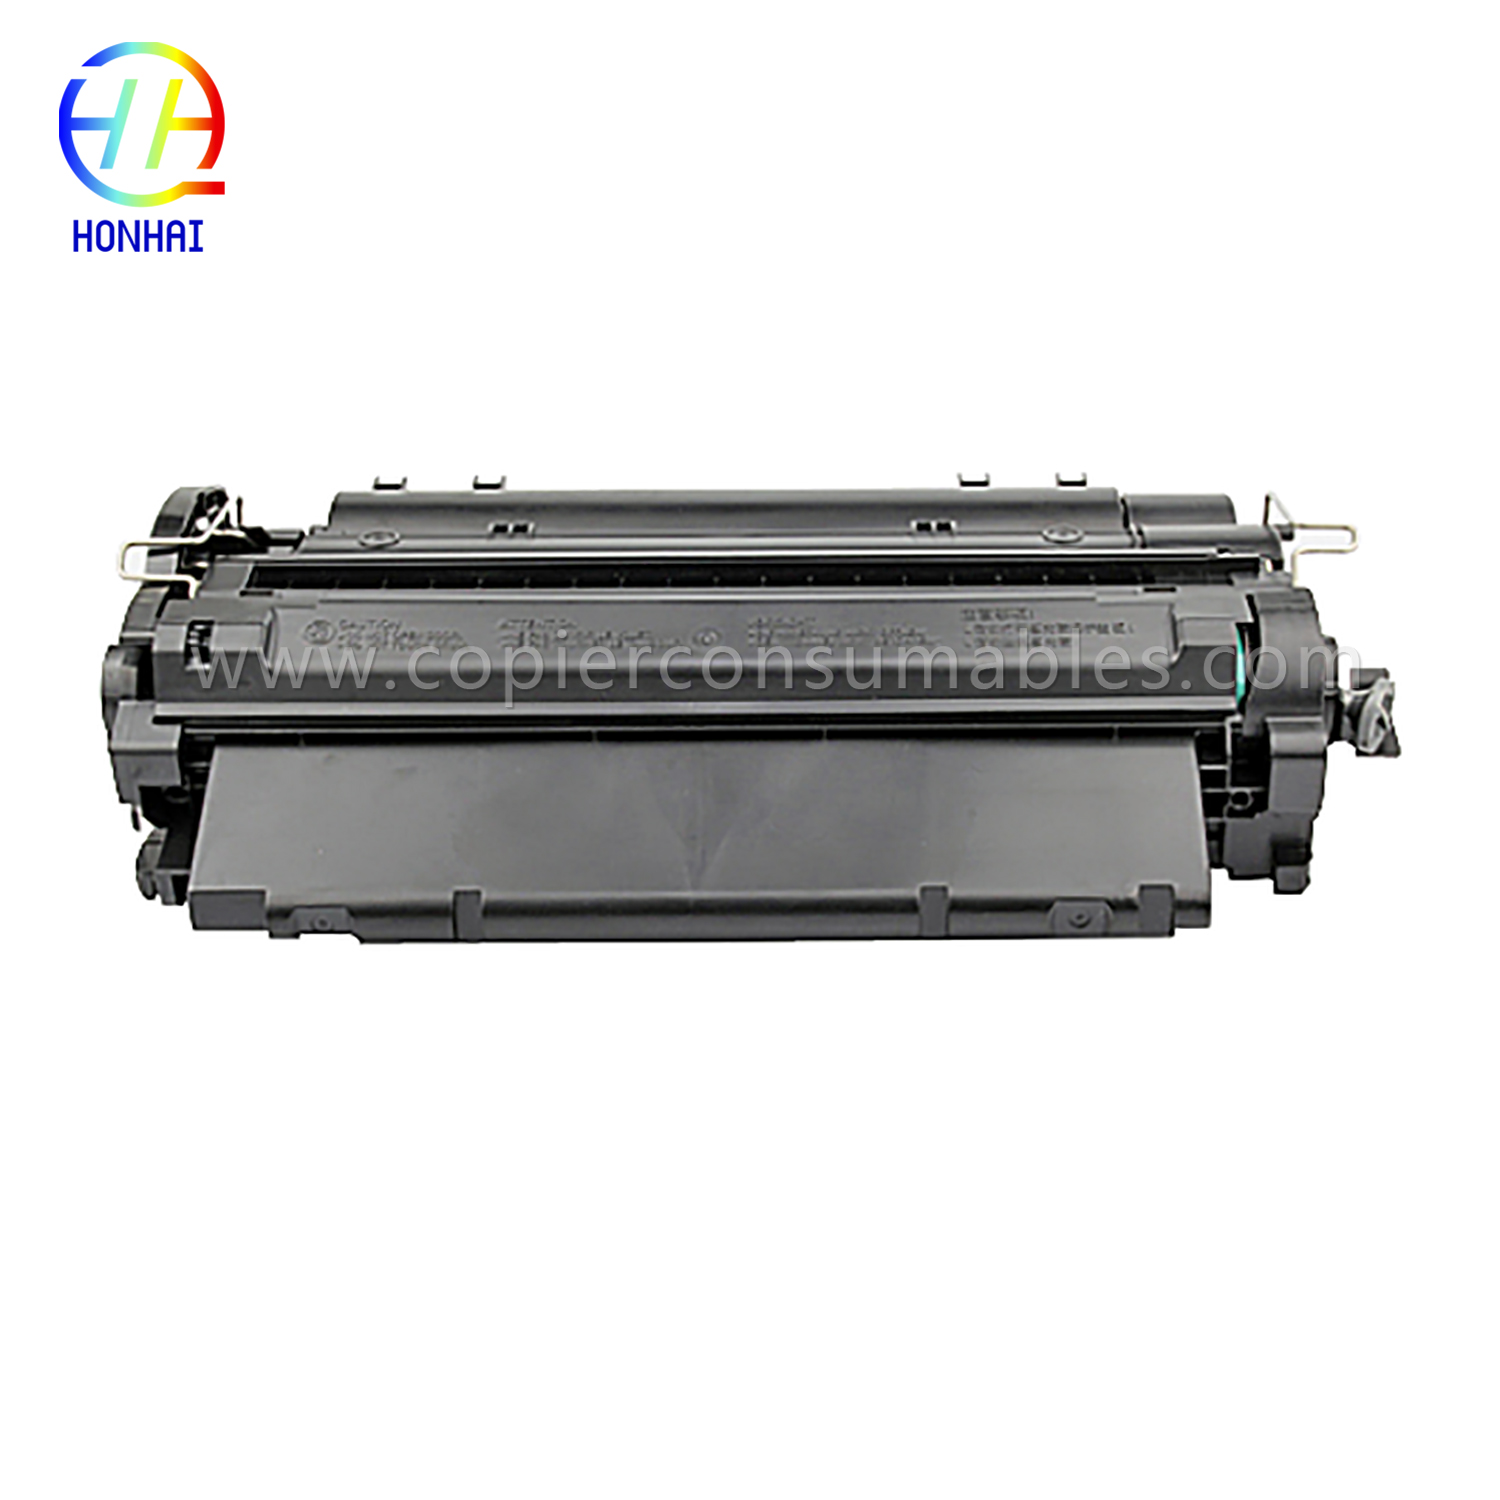 Έγχρωμες κασέτες γραφίτη HP LaserJet LaserJet Pro MFP M521dn Enterprise P3015 (CE255X) -1 (2) 拷贝